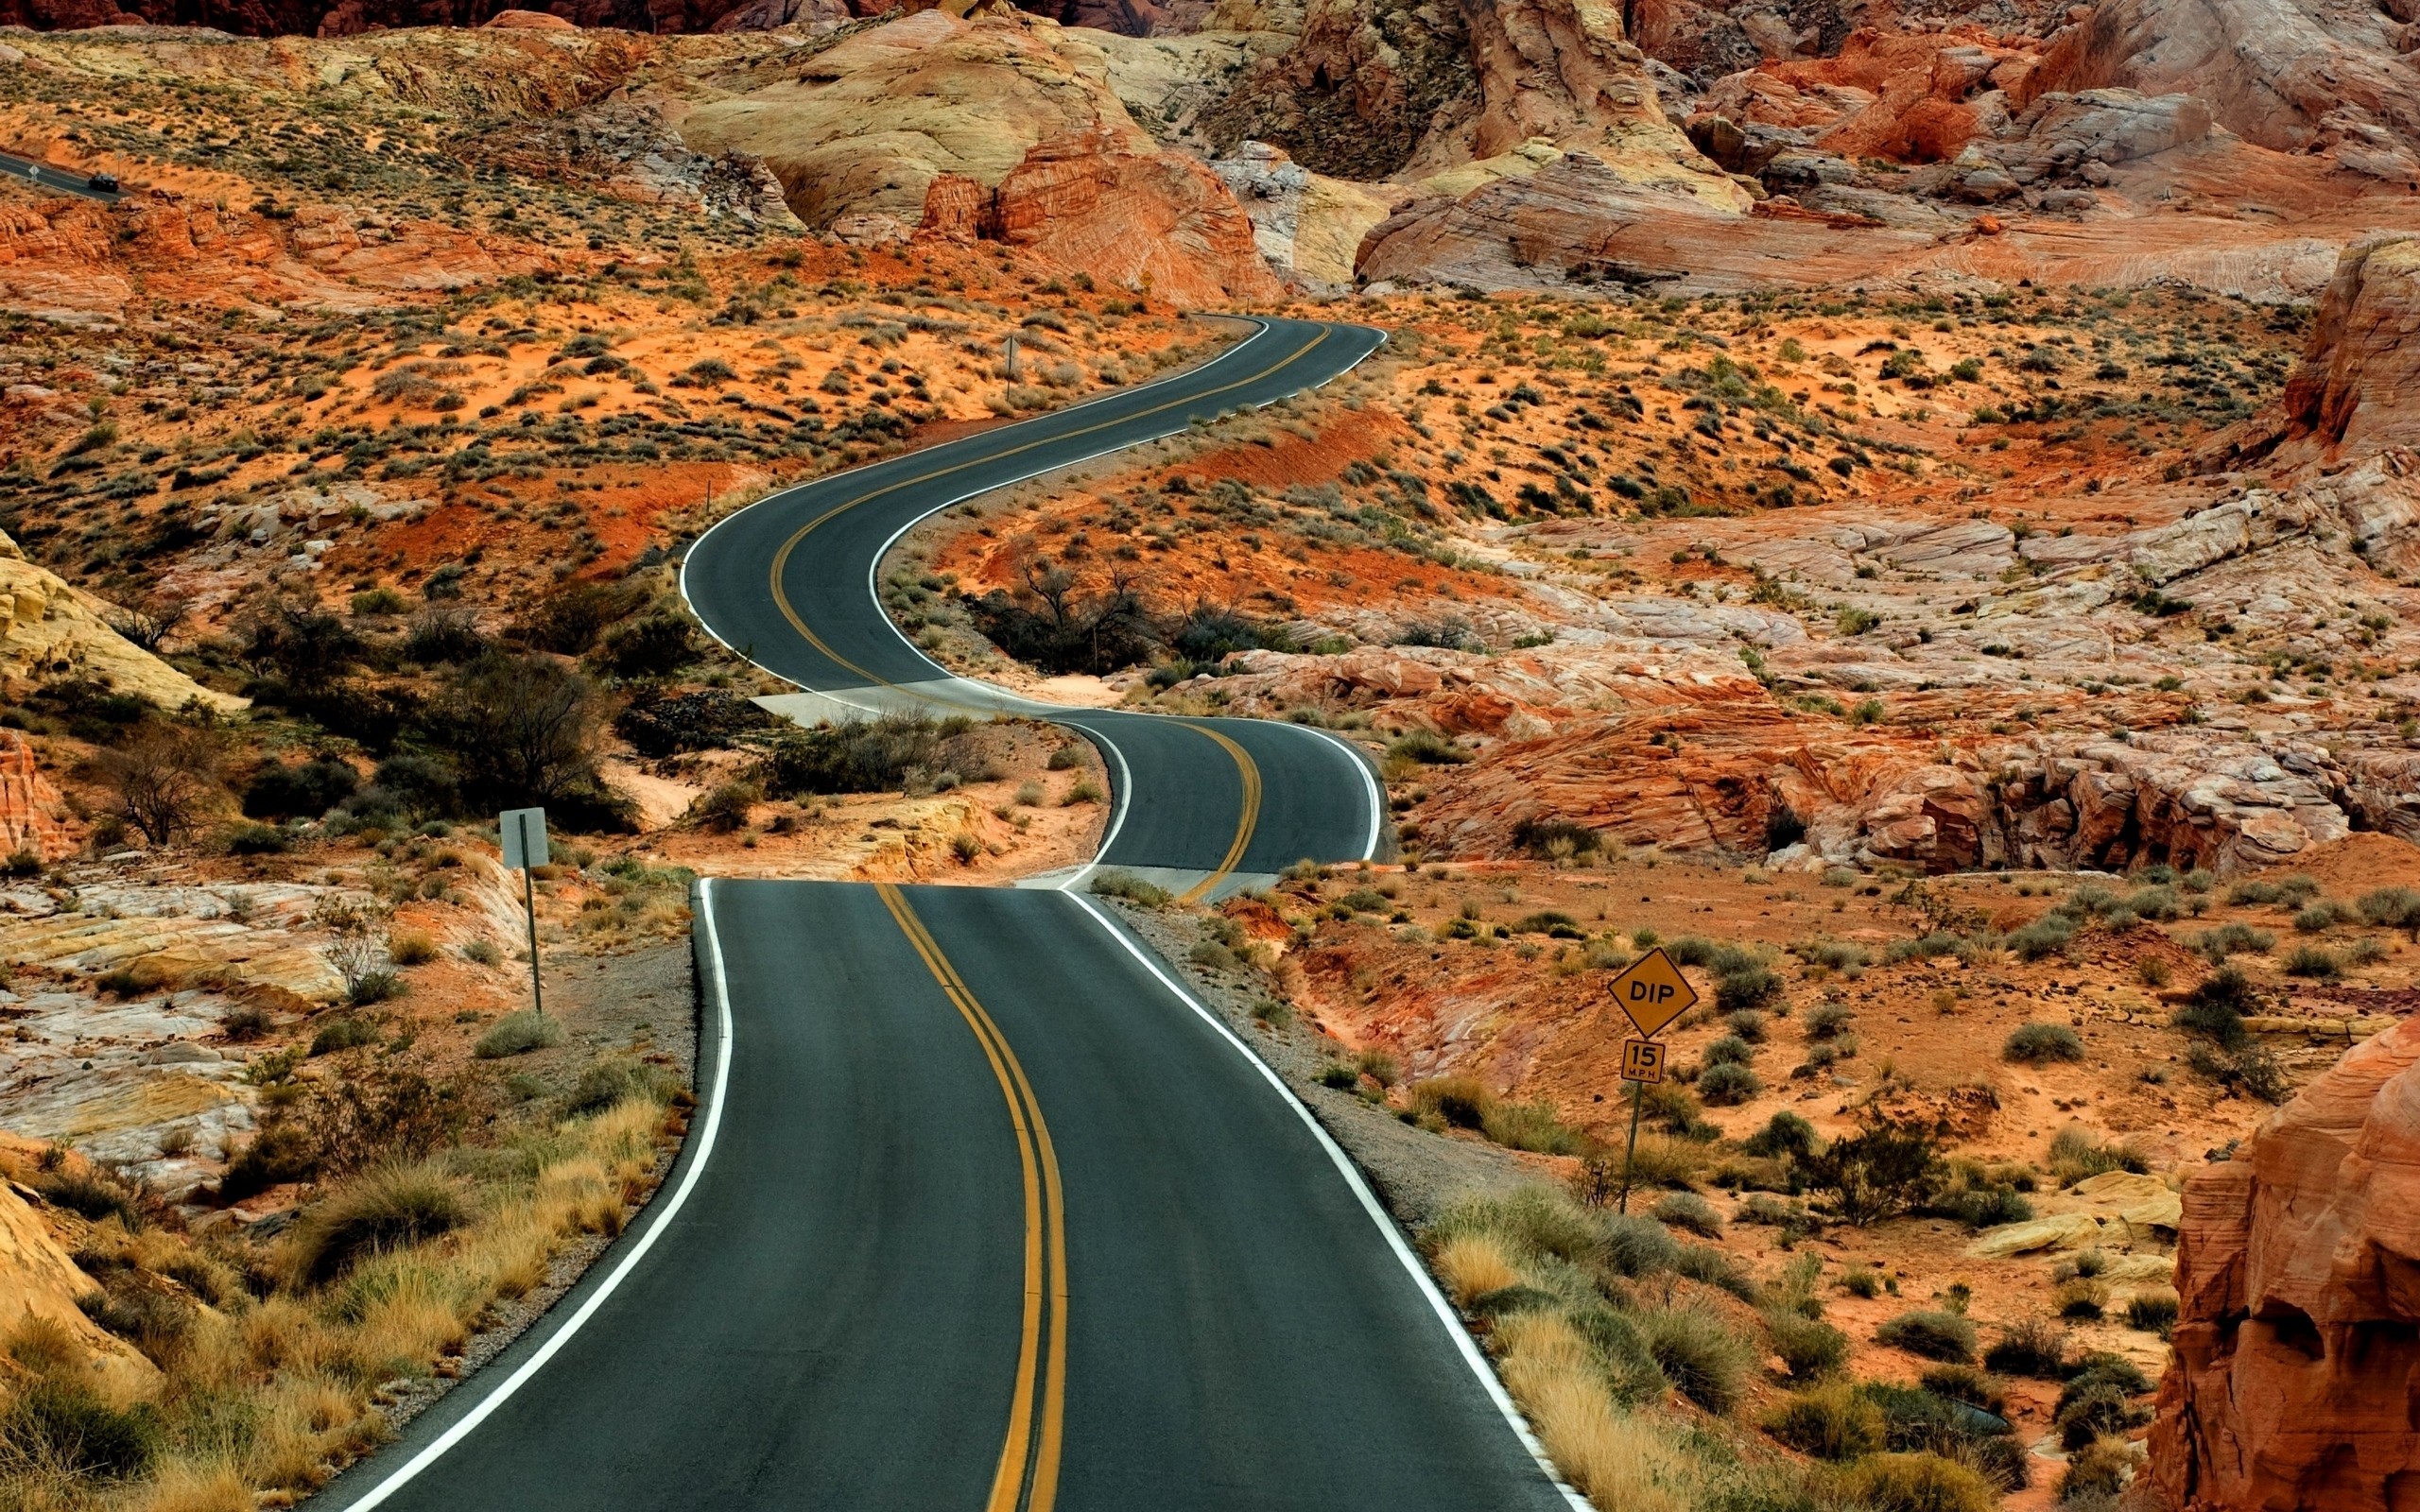 landscapes, deserts, roads - desktop wallpaper